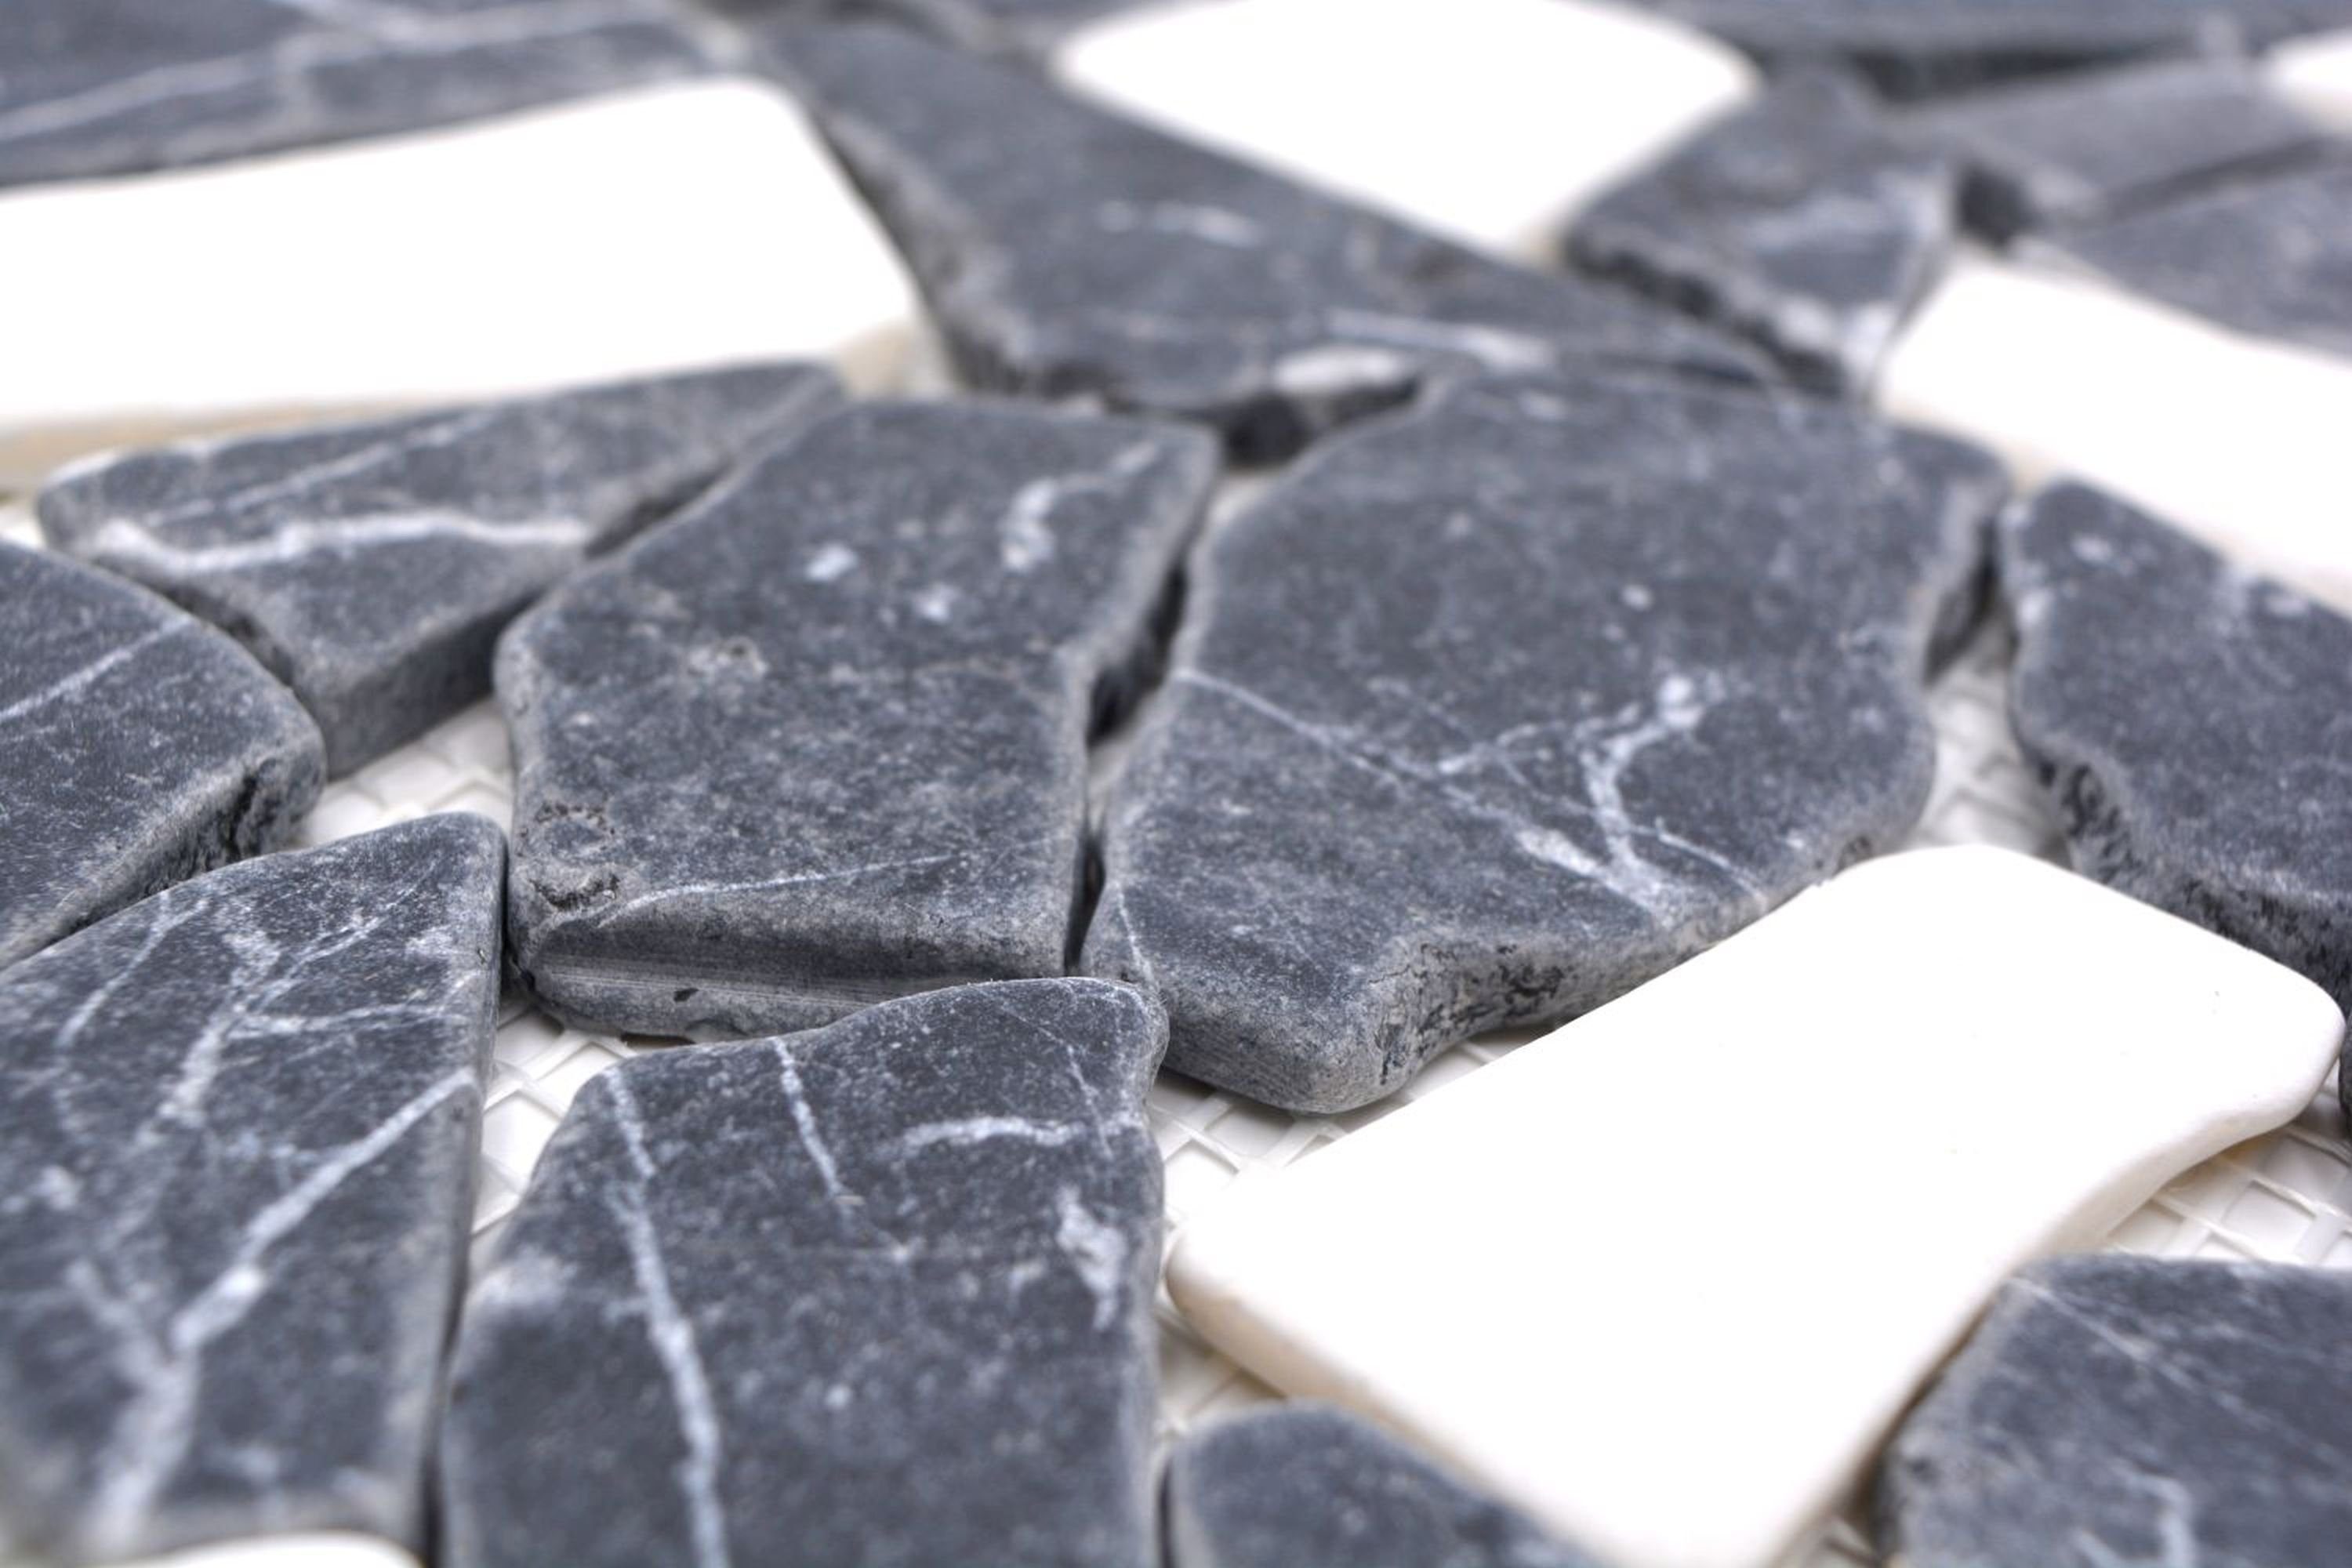 Mosani Mosaikfliesen Mosaik Bruch Marmor anthrazit schwarz Naturstein weiß Bad Küche